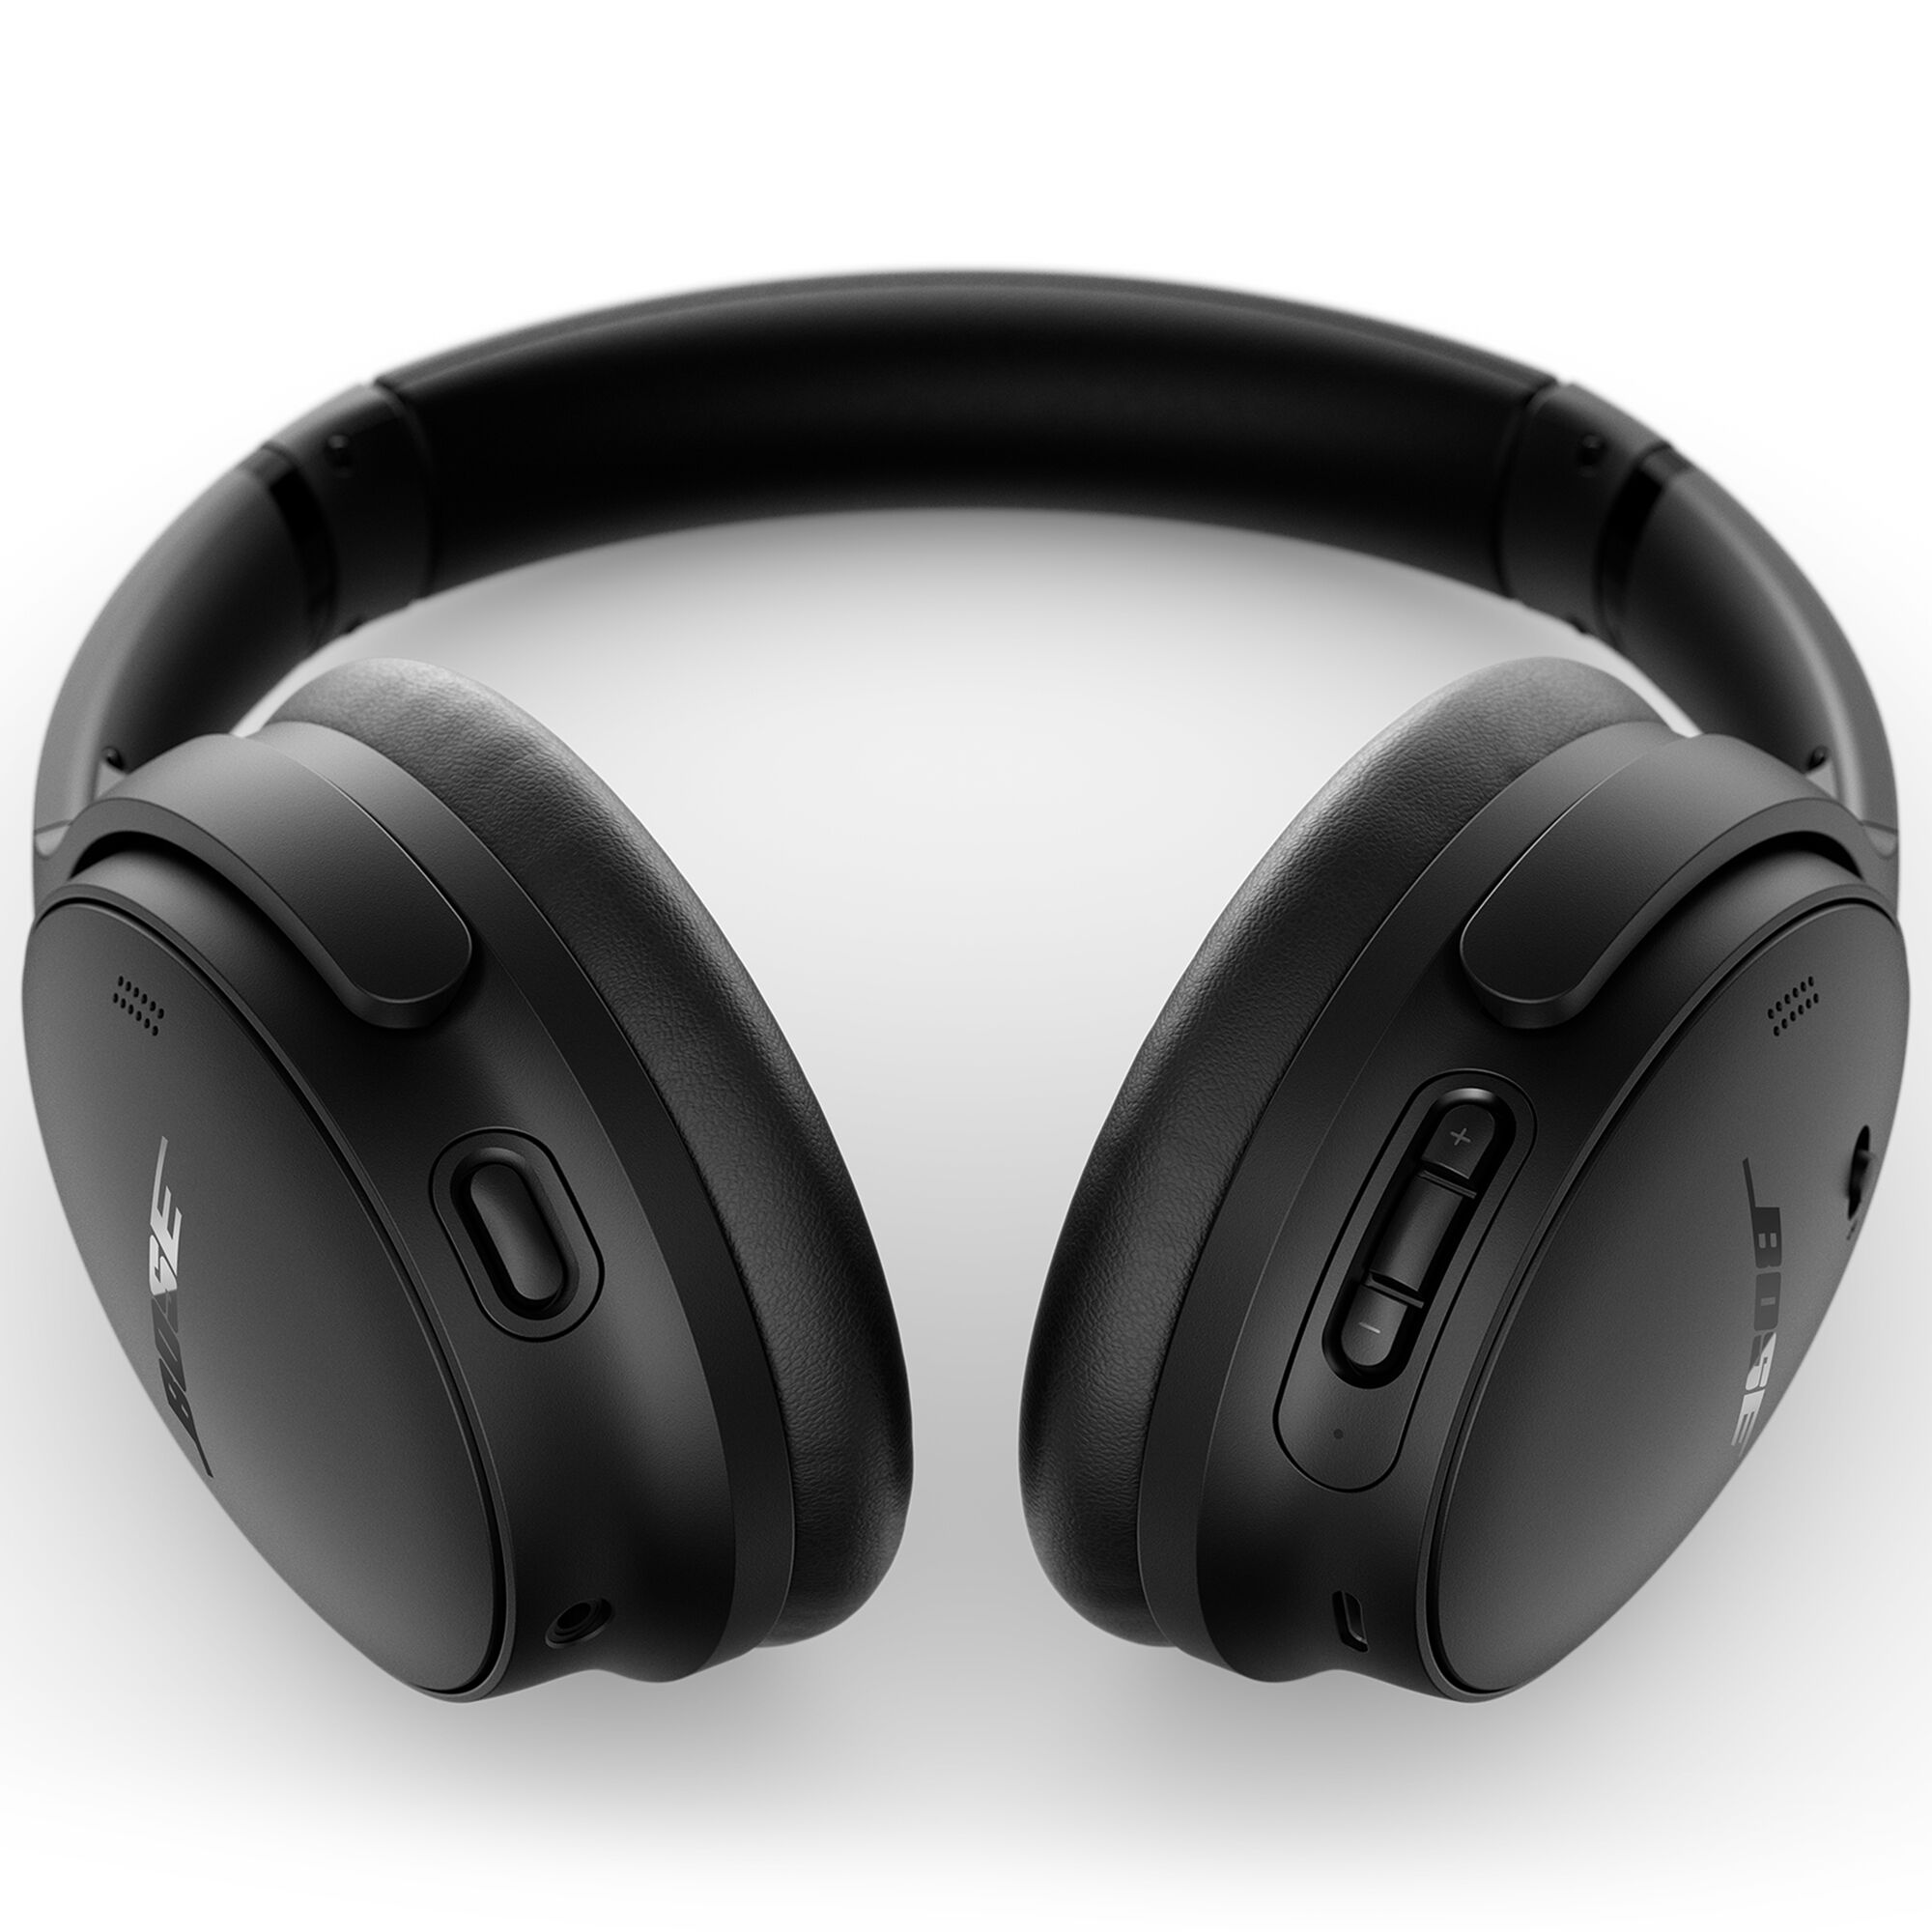 New Bose Quiet Comfort Headphones - Black